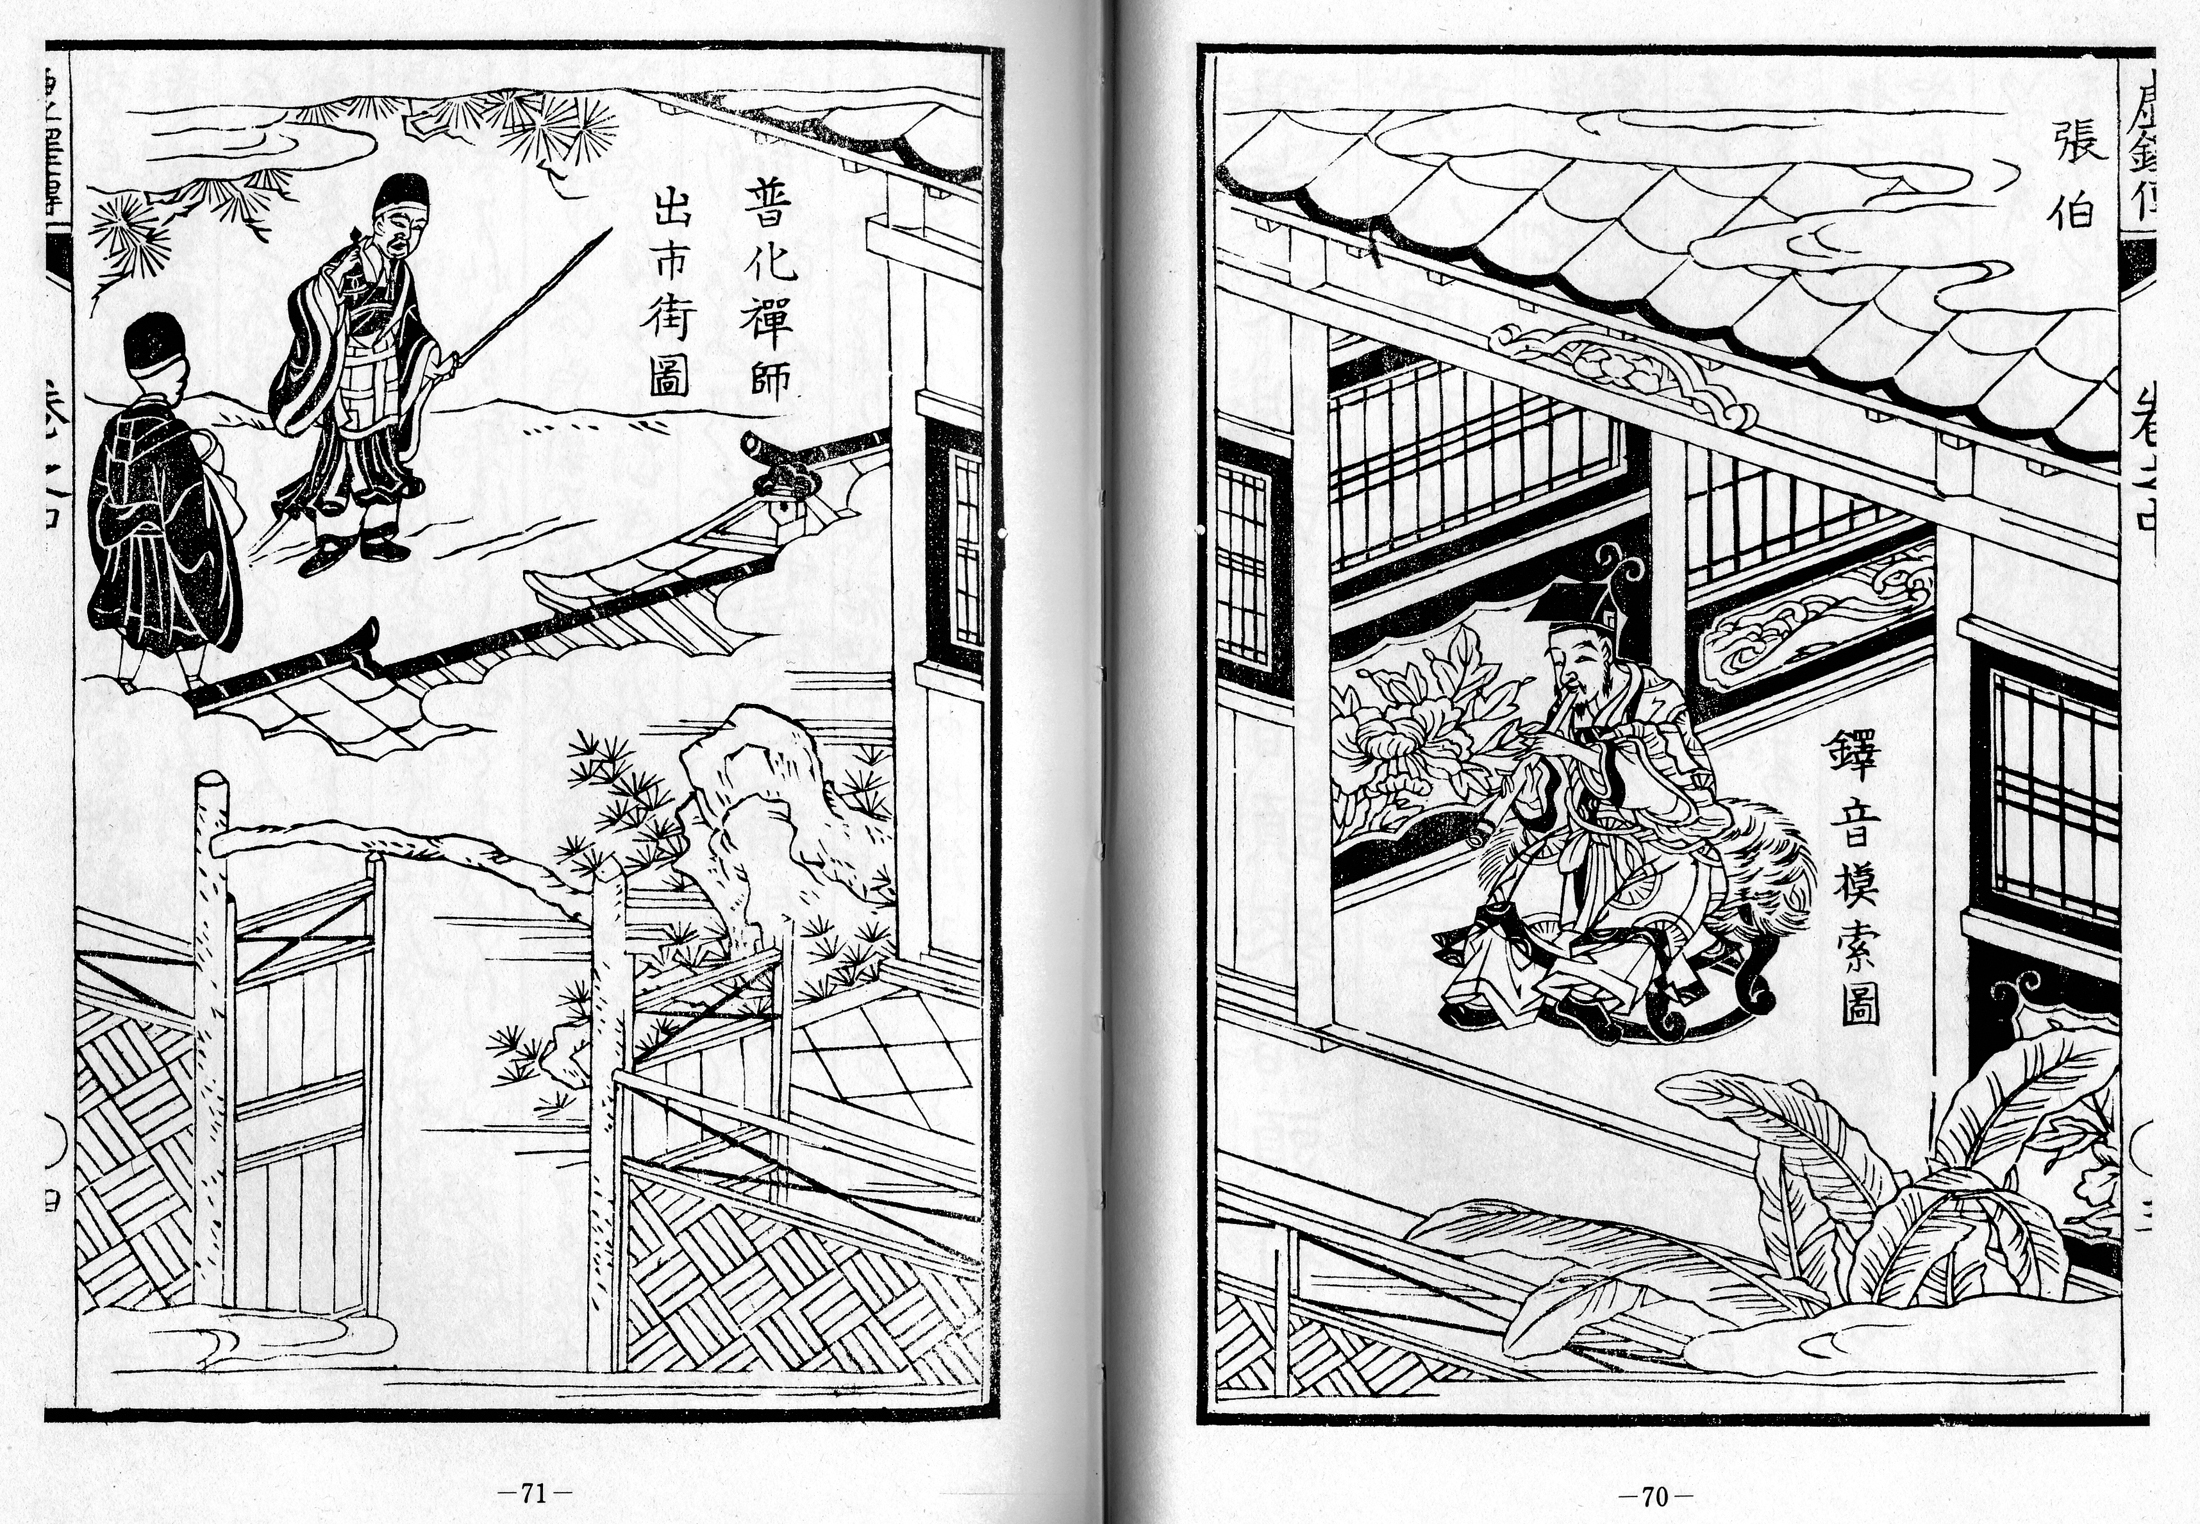 Kyotaku denki kokujikai illustration pp. 70-71